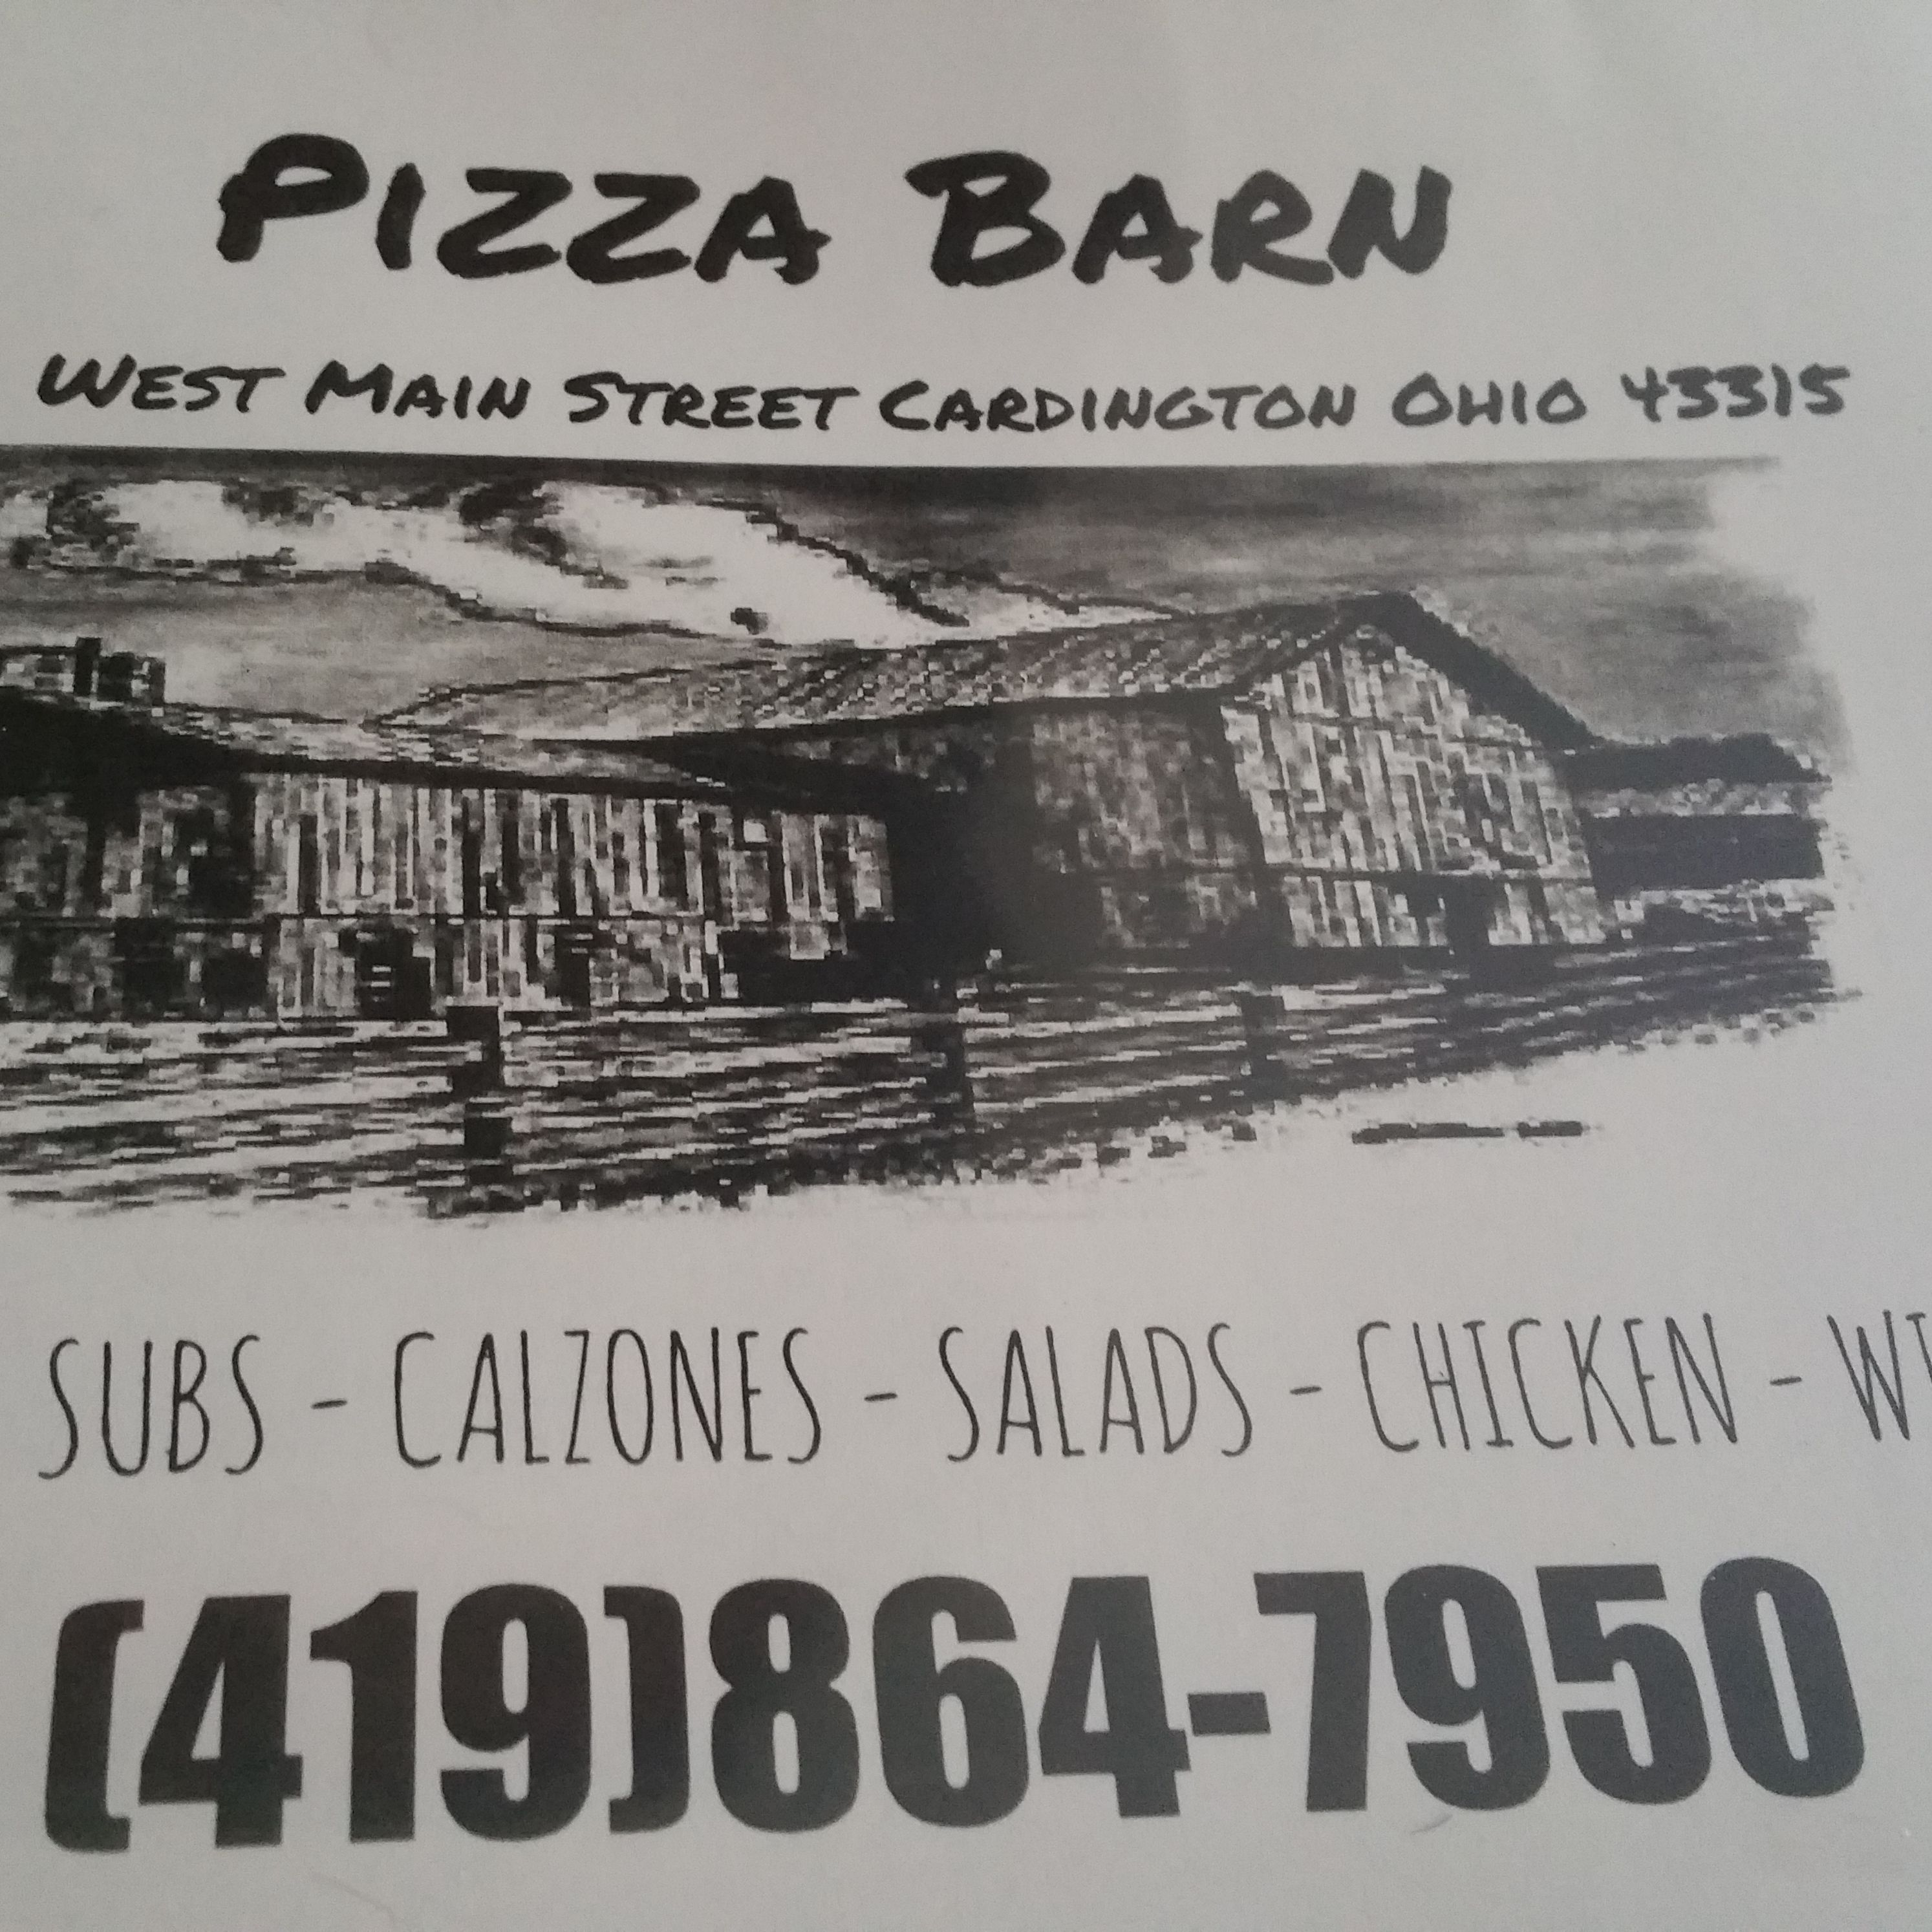 Cardington Pizza Barn Photo